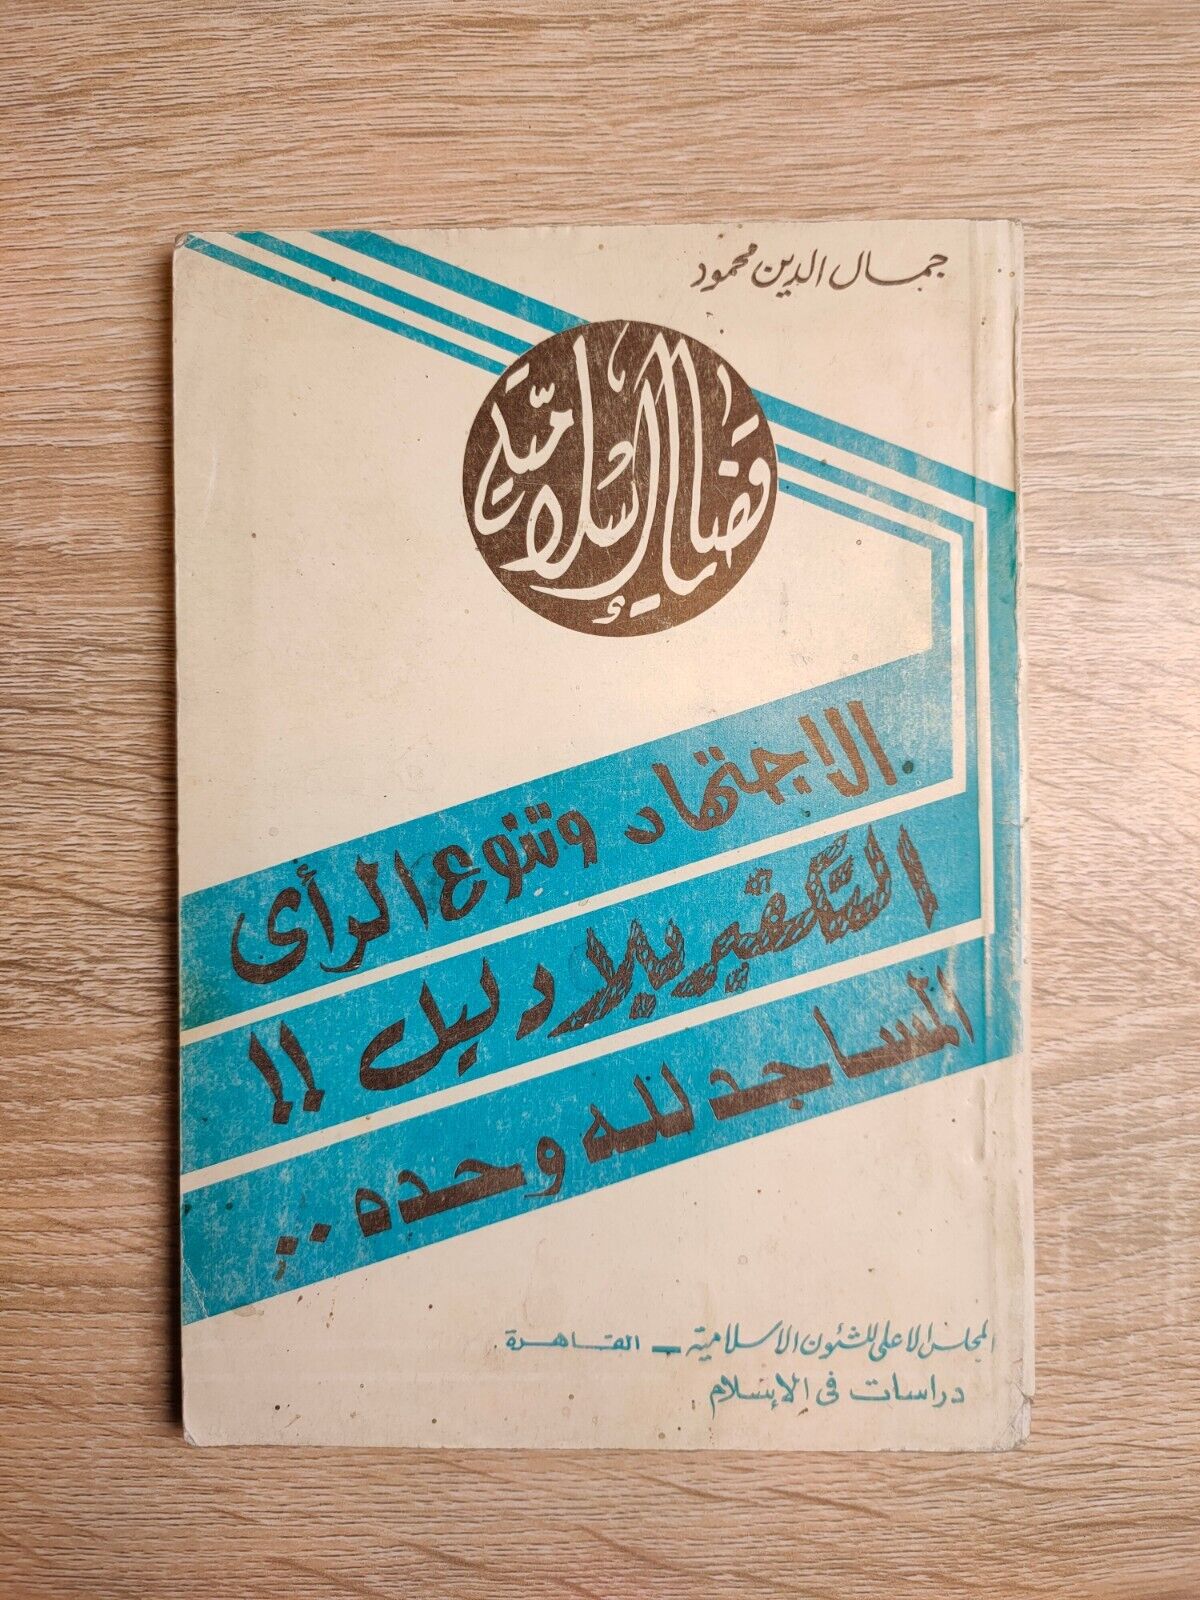 1981 Vintage Islamic Cases Takfir قضايا إسلامية الاجتهاد وتنوع الرأي التكفير 📚